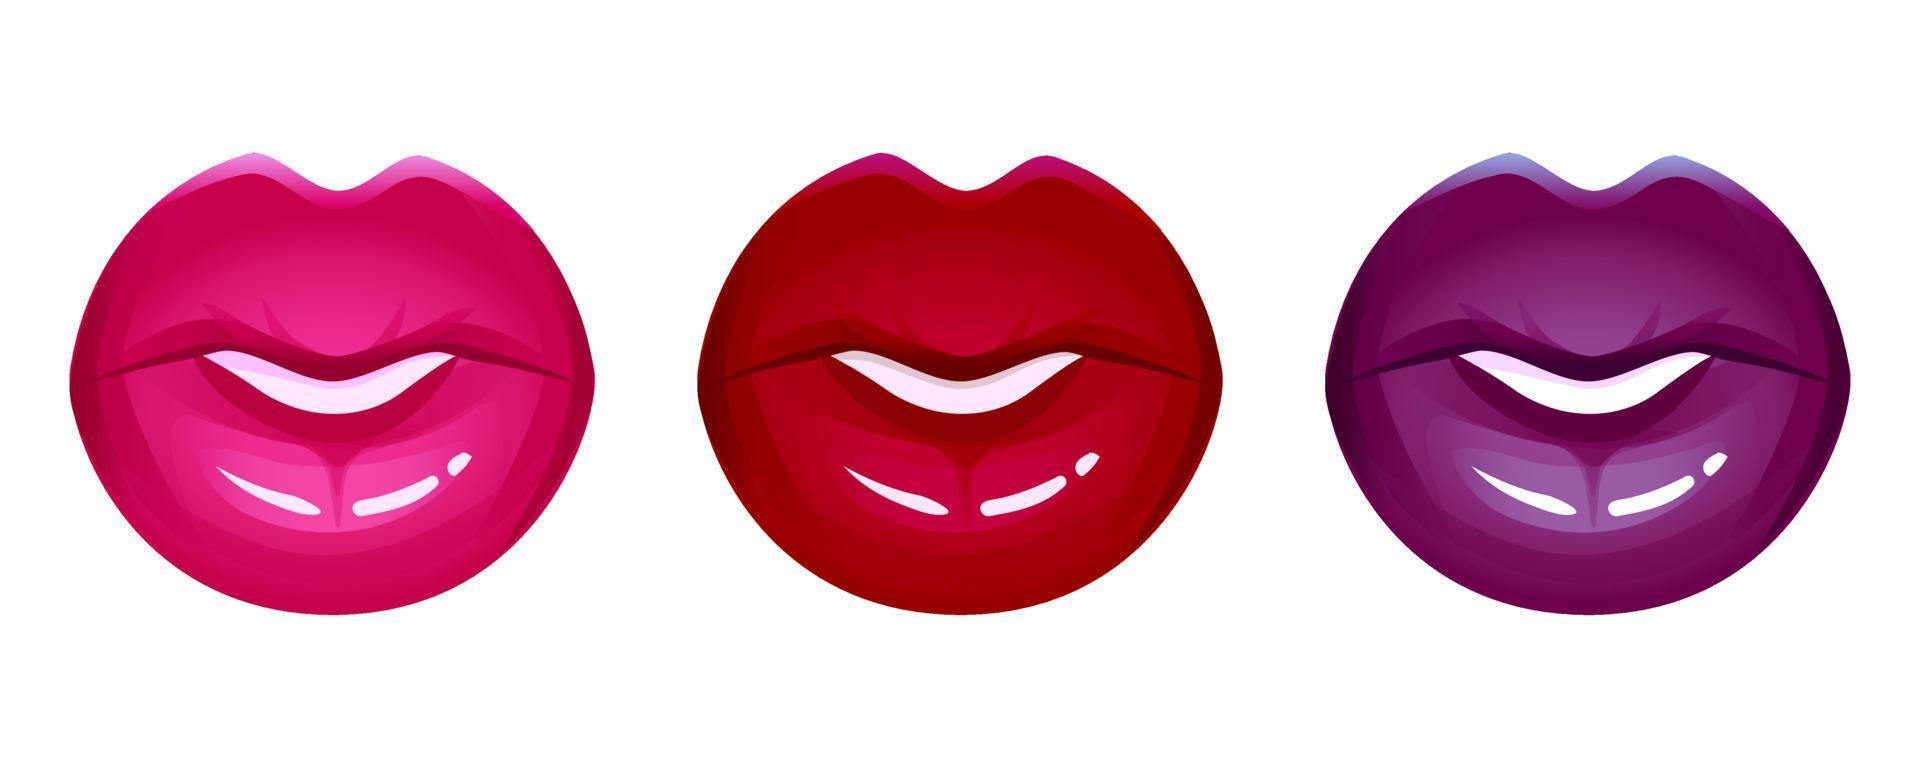 lèvres réalistes vector icon set isolé sur blanc. bouche 3d des femmes, rouge à lèvres brillant brillant rouge. illustration de mode glamour.